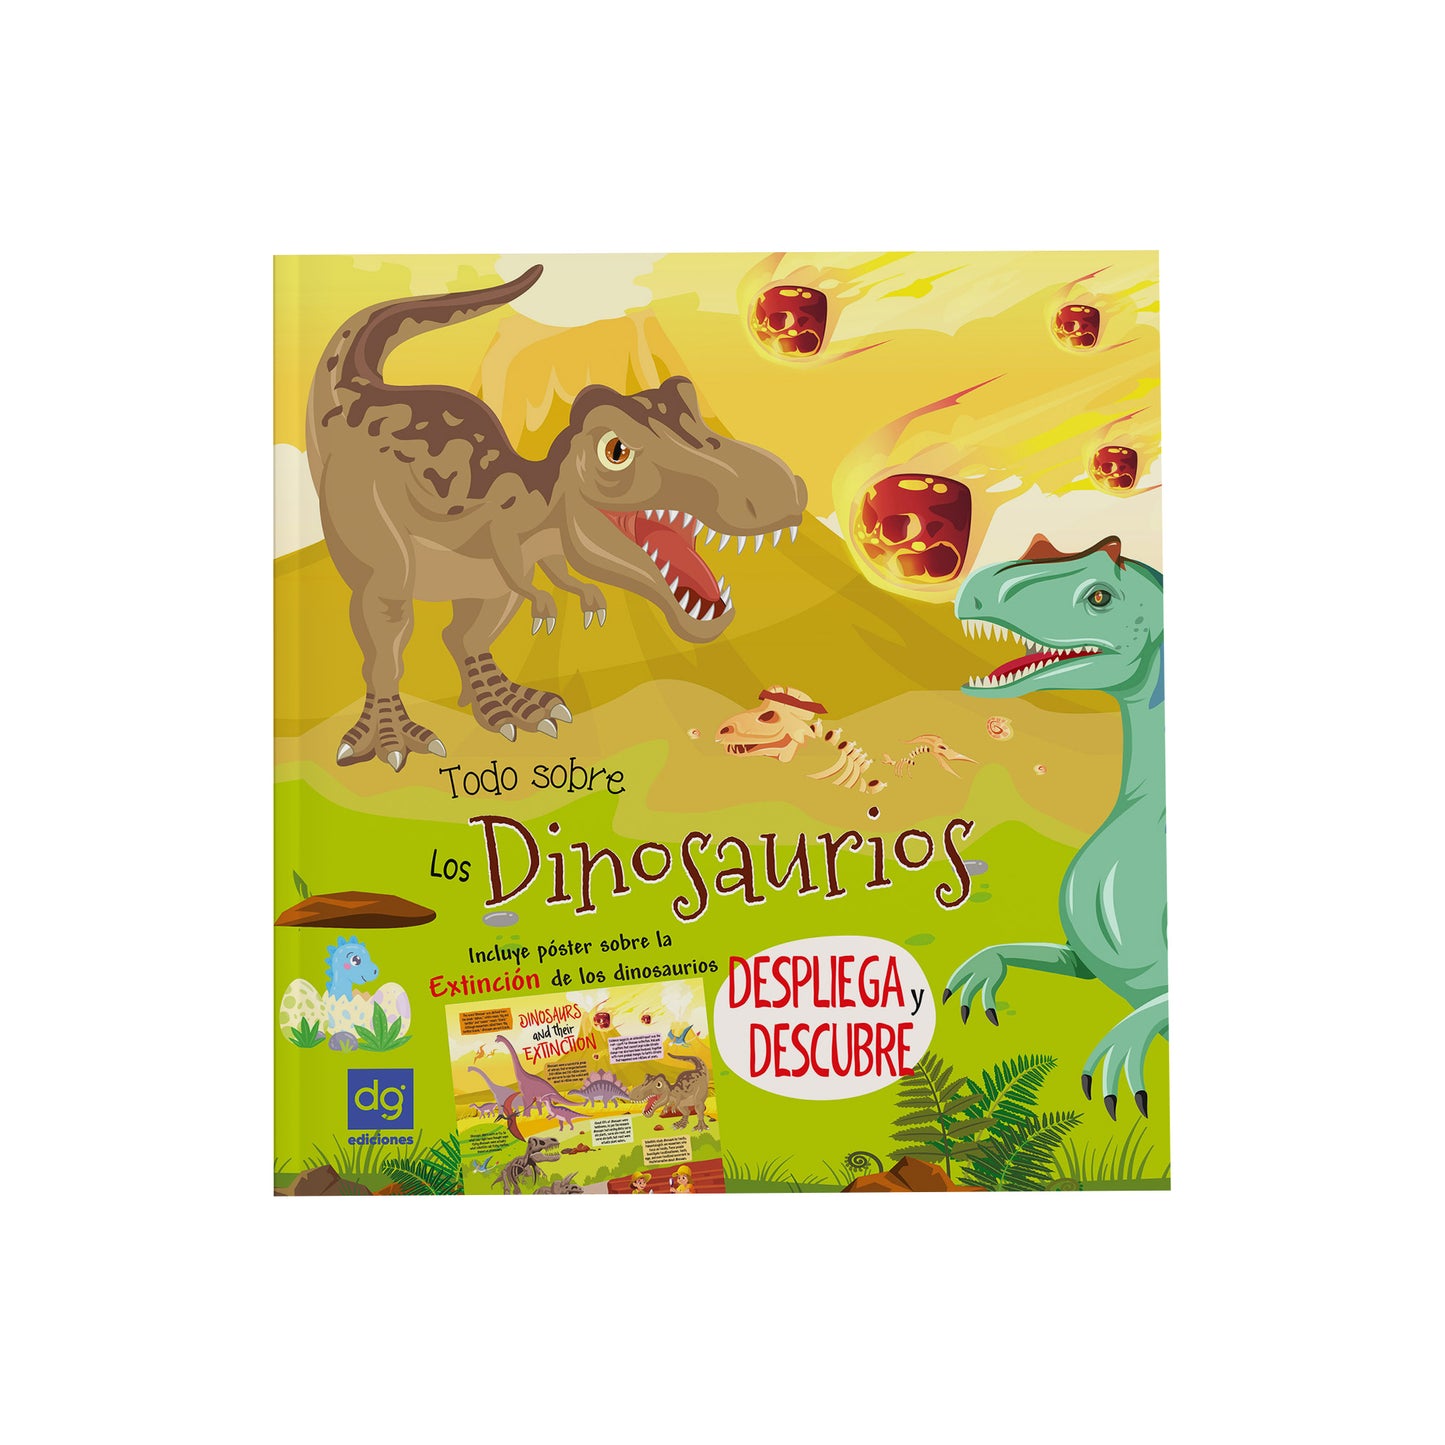 Historias despliega y descubre - Dinosaurios